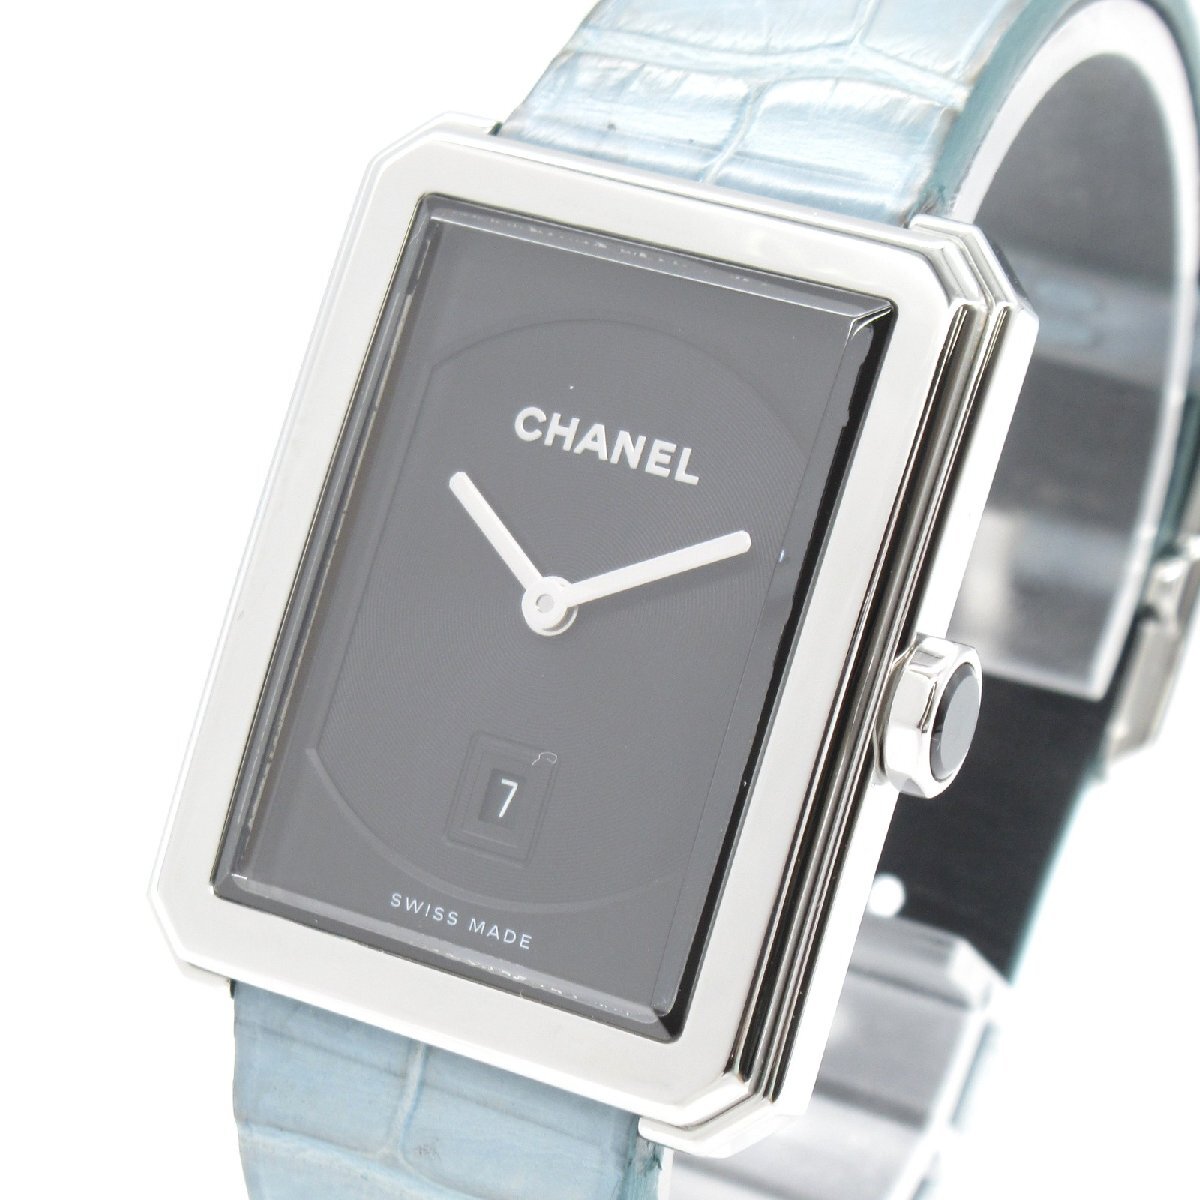 CHANEL シャネル 腕時計 ボーイフレンド 腕時計 ウォッチ ブラック系 ステンレススチール クロコレザーベルト 中古 レディース_画像3